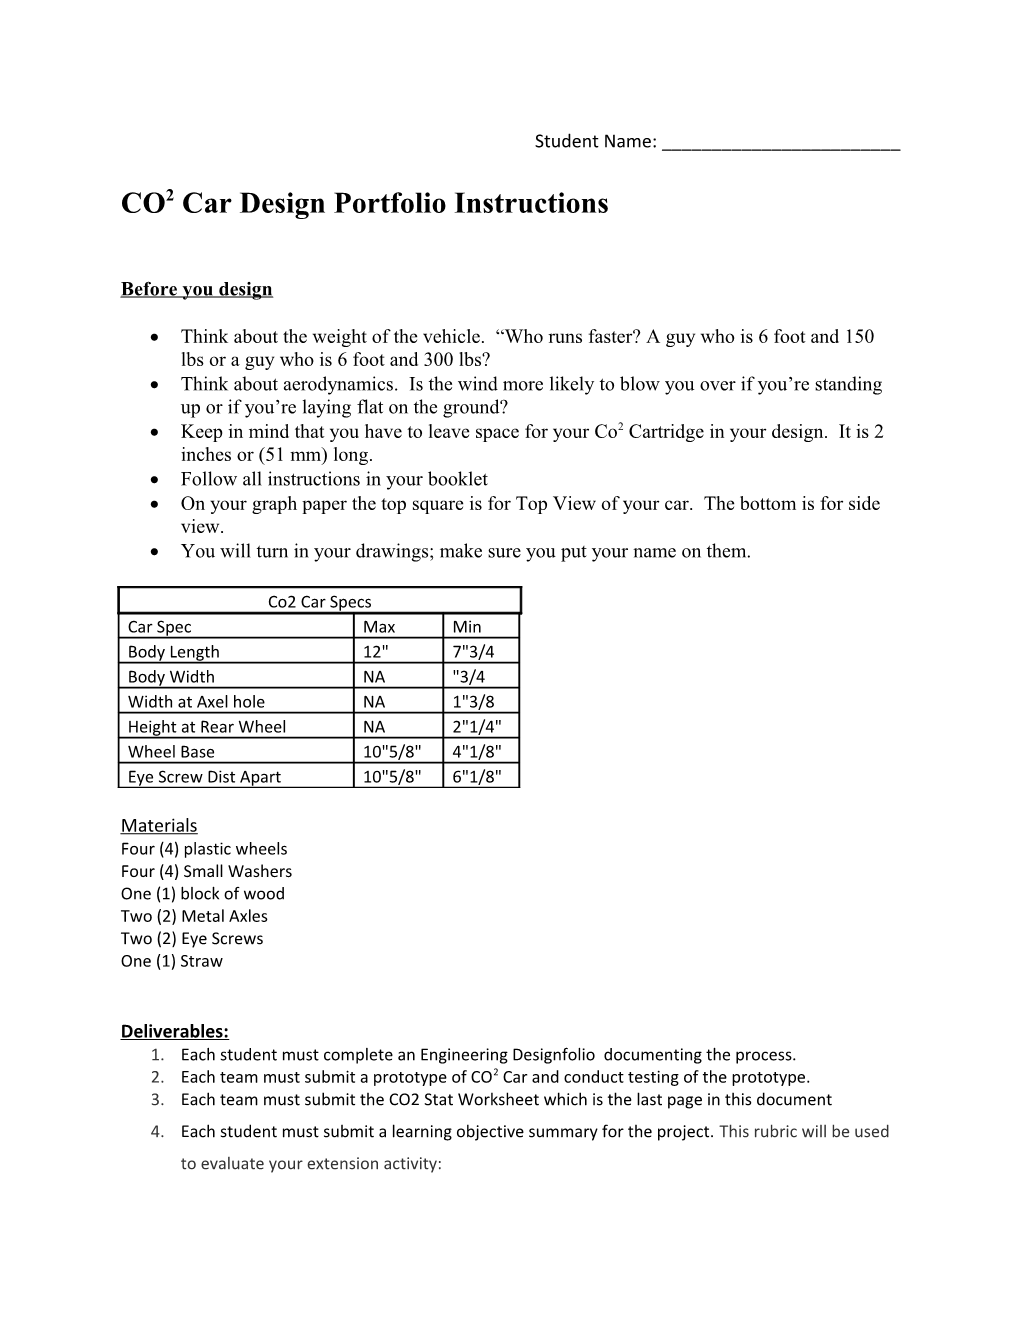 CO2 Car Design Portfolio Instructions